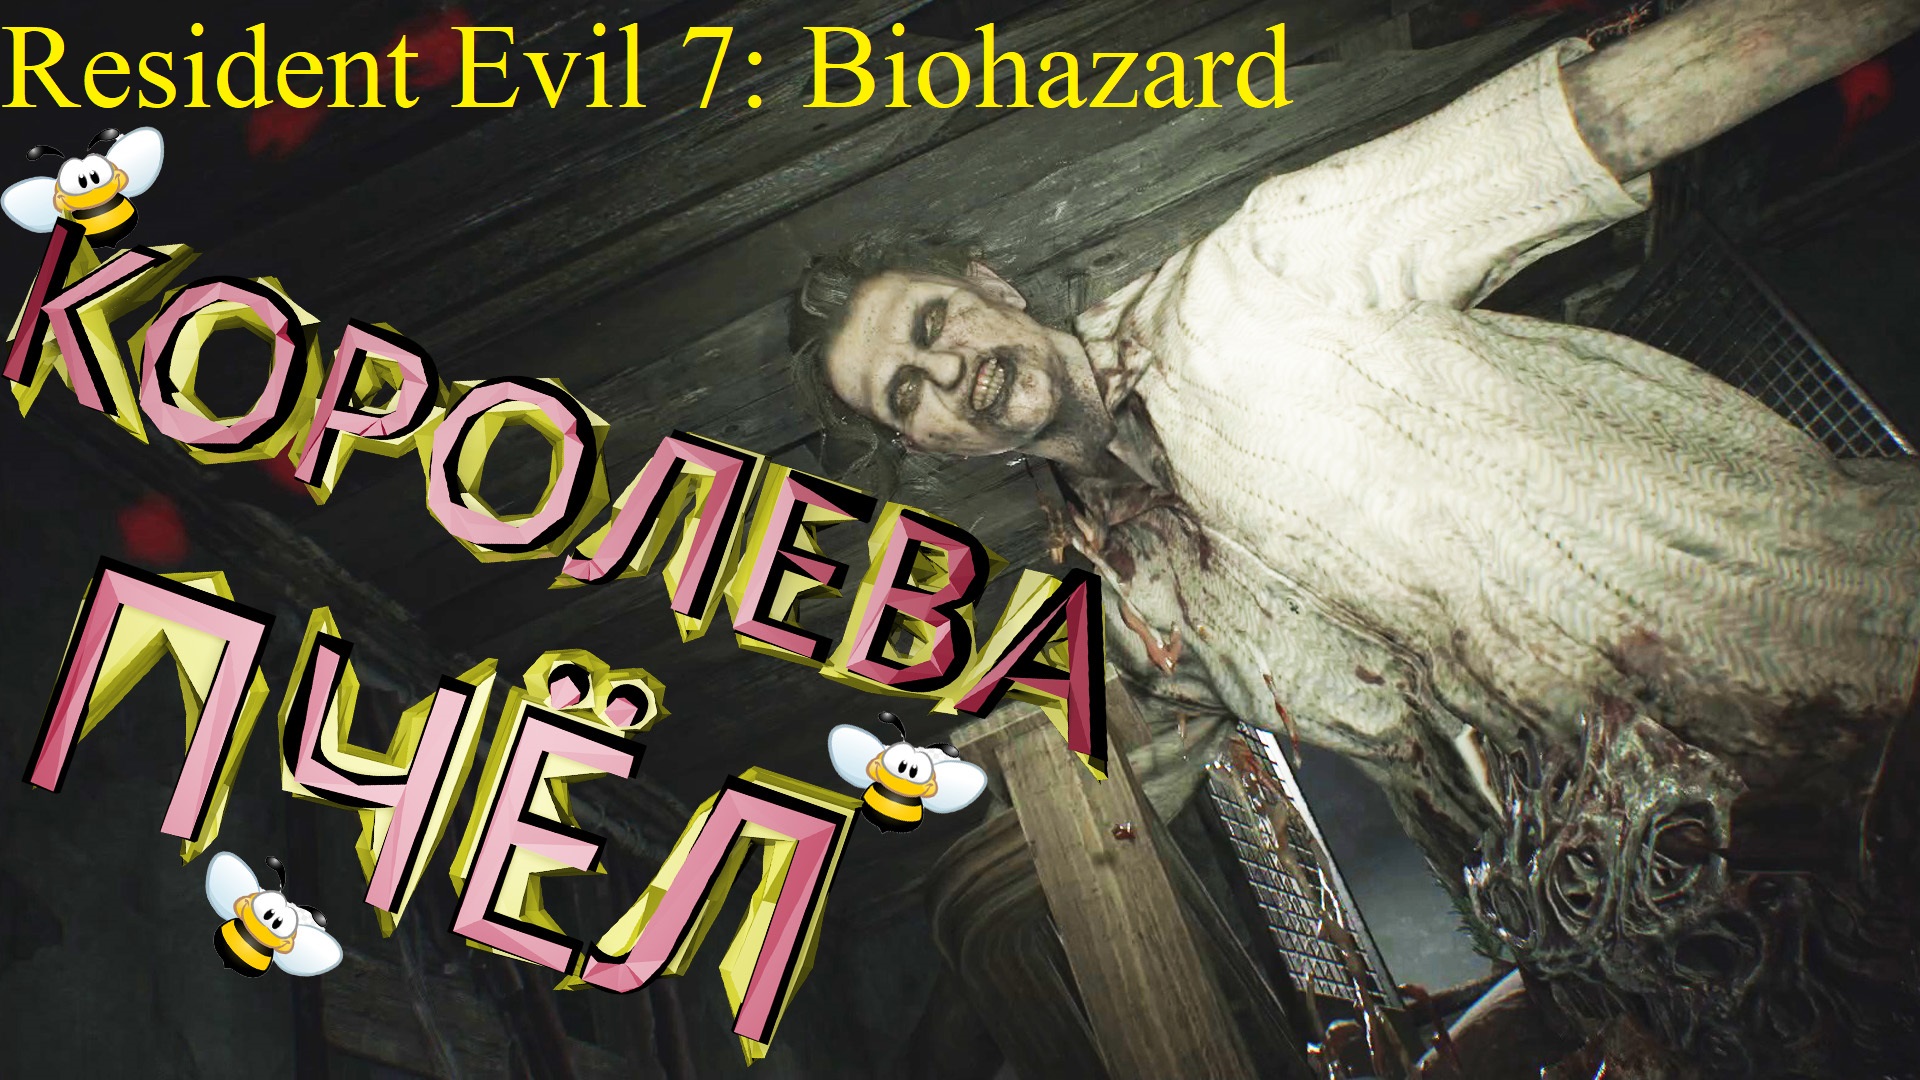 ПЧЕЛИНЫЙ МАСТЕР (МЕЖДУ НОГ) ► Resident Evil 7: Biohazard Прохождение #5